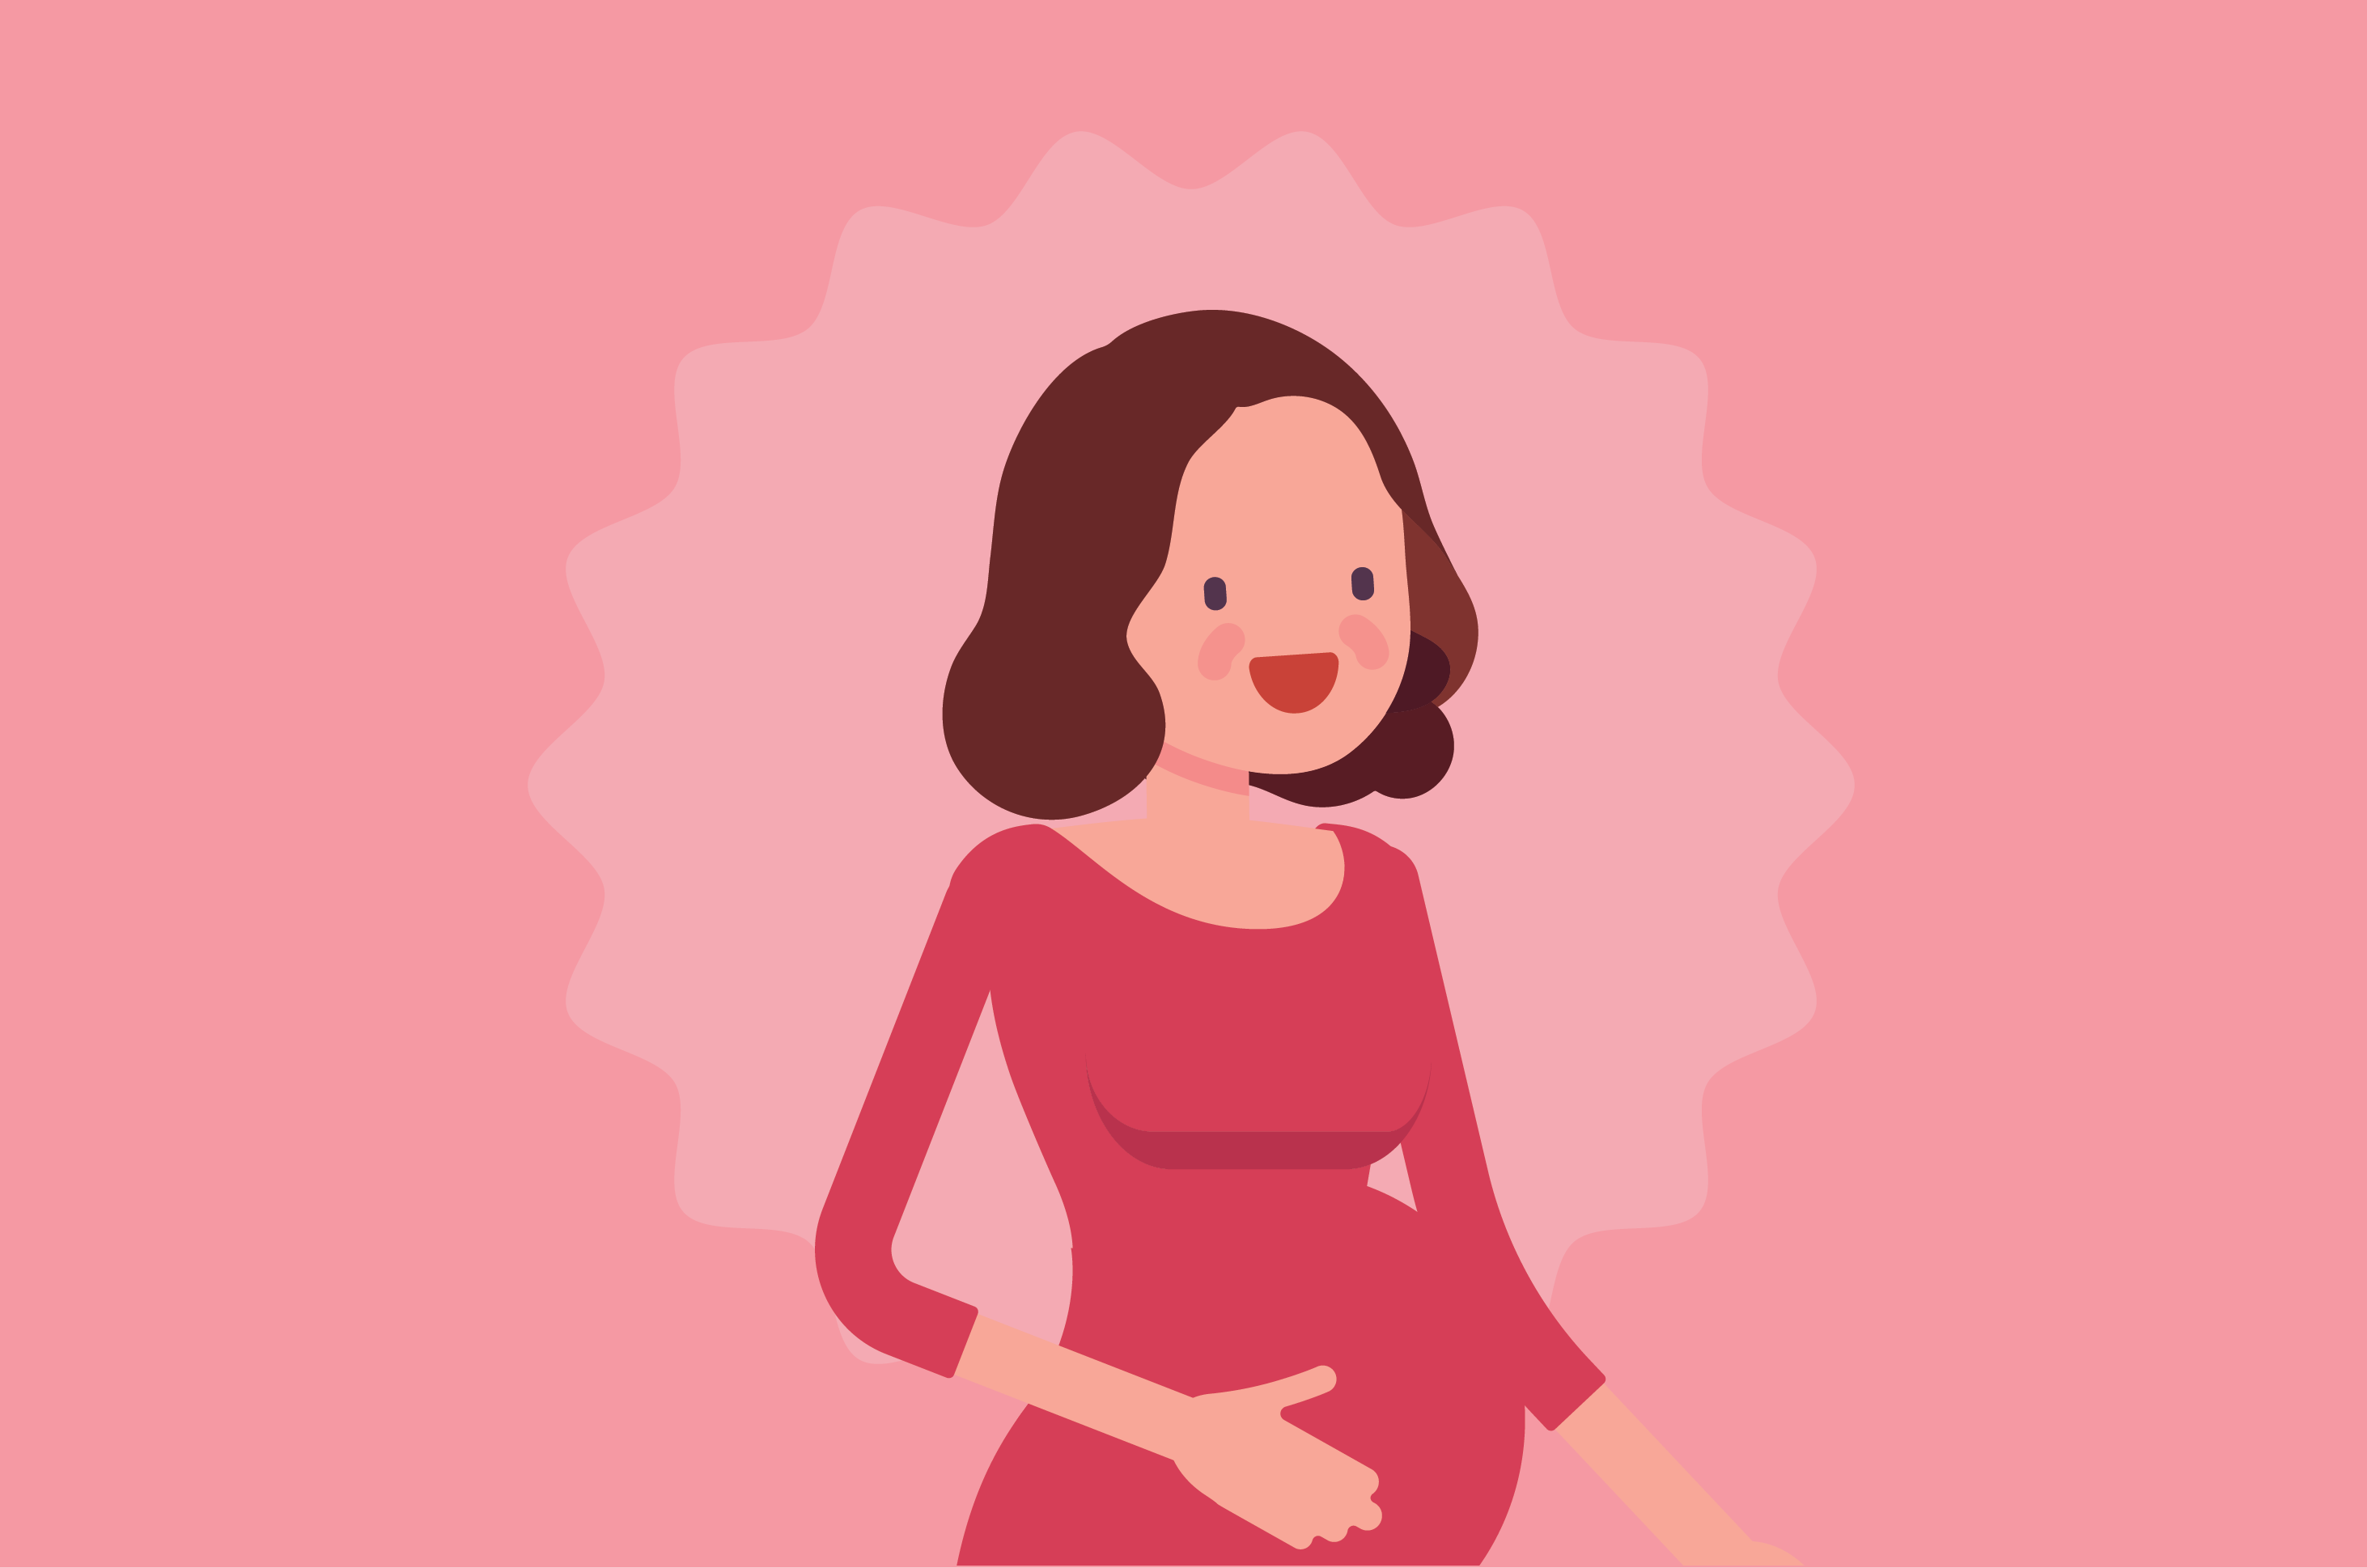 يجب أن تعرف النساء الحوامل أن هذا هو خطر الحمل في المشيمة الملتصقة